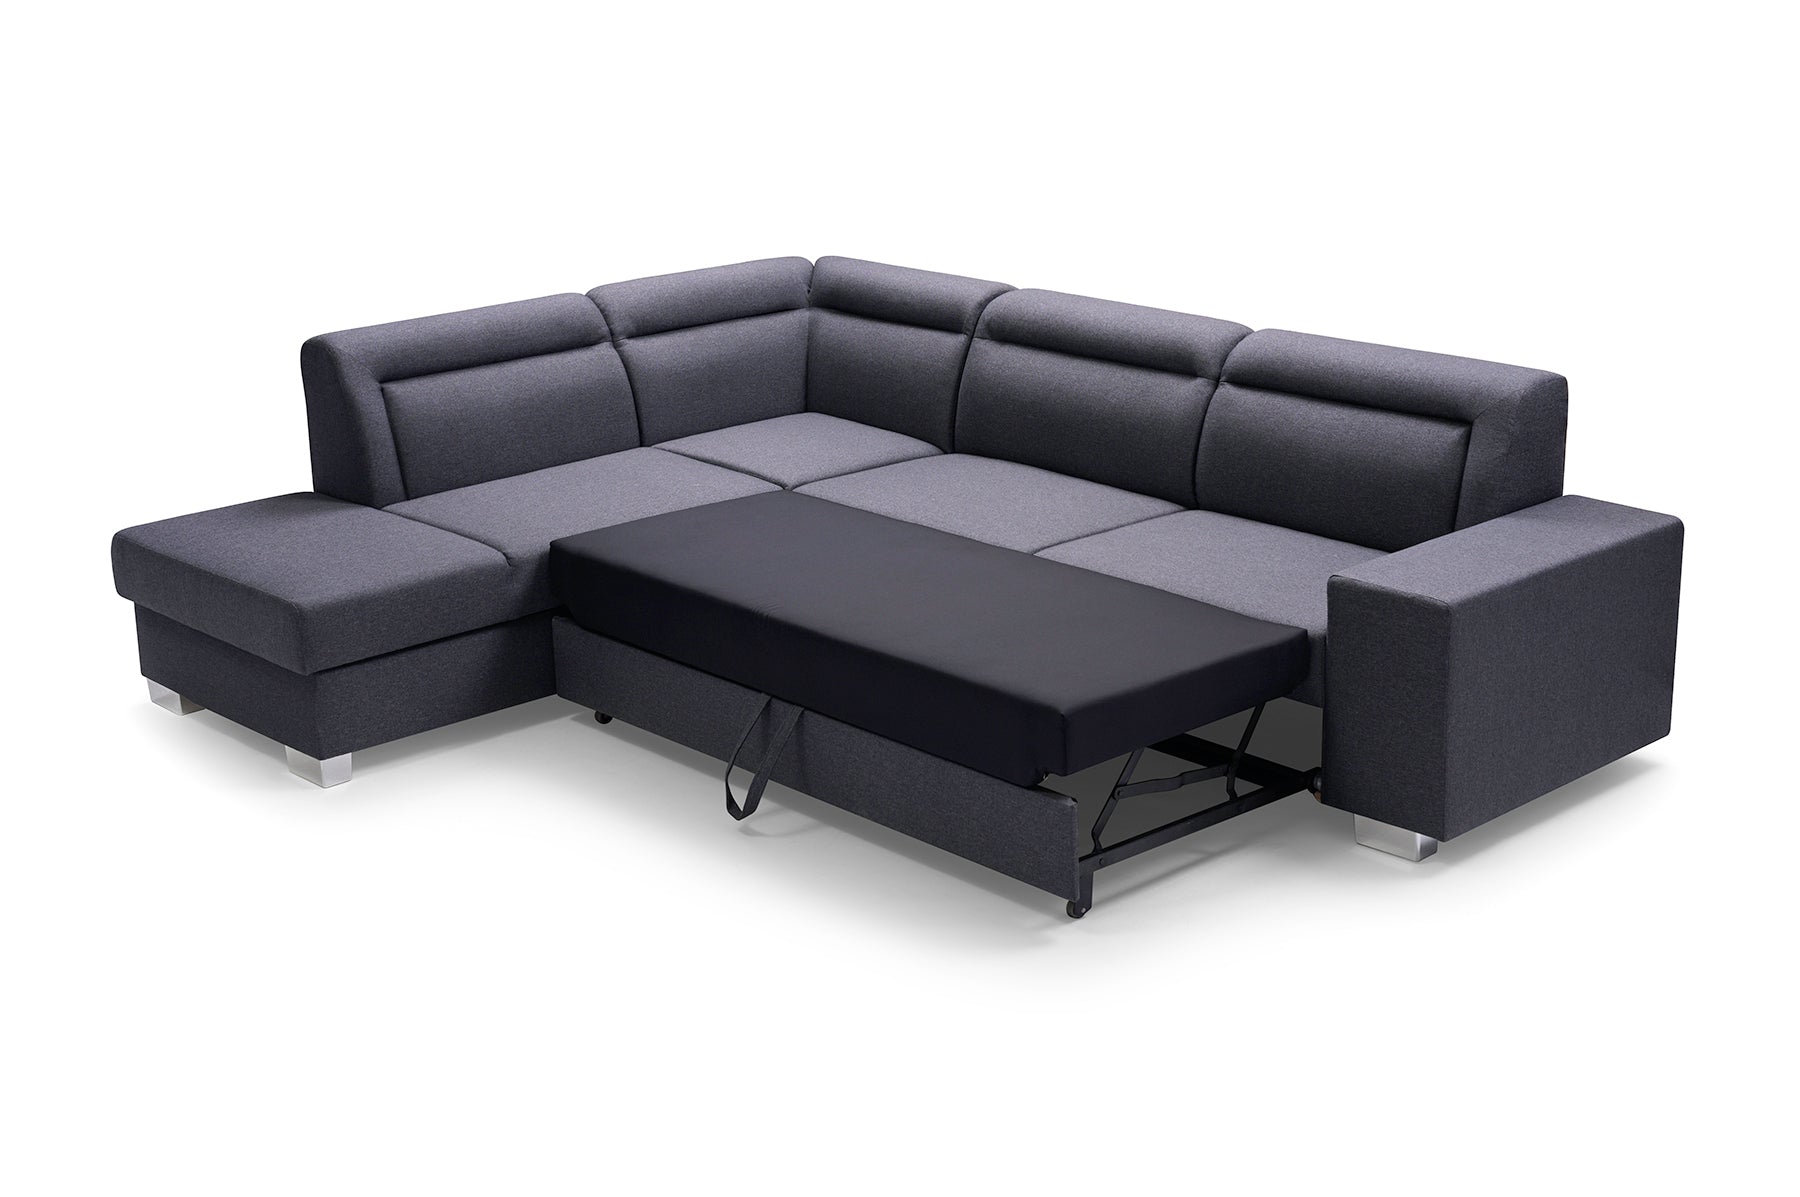 Denver Modern Corner Sofa Bed With